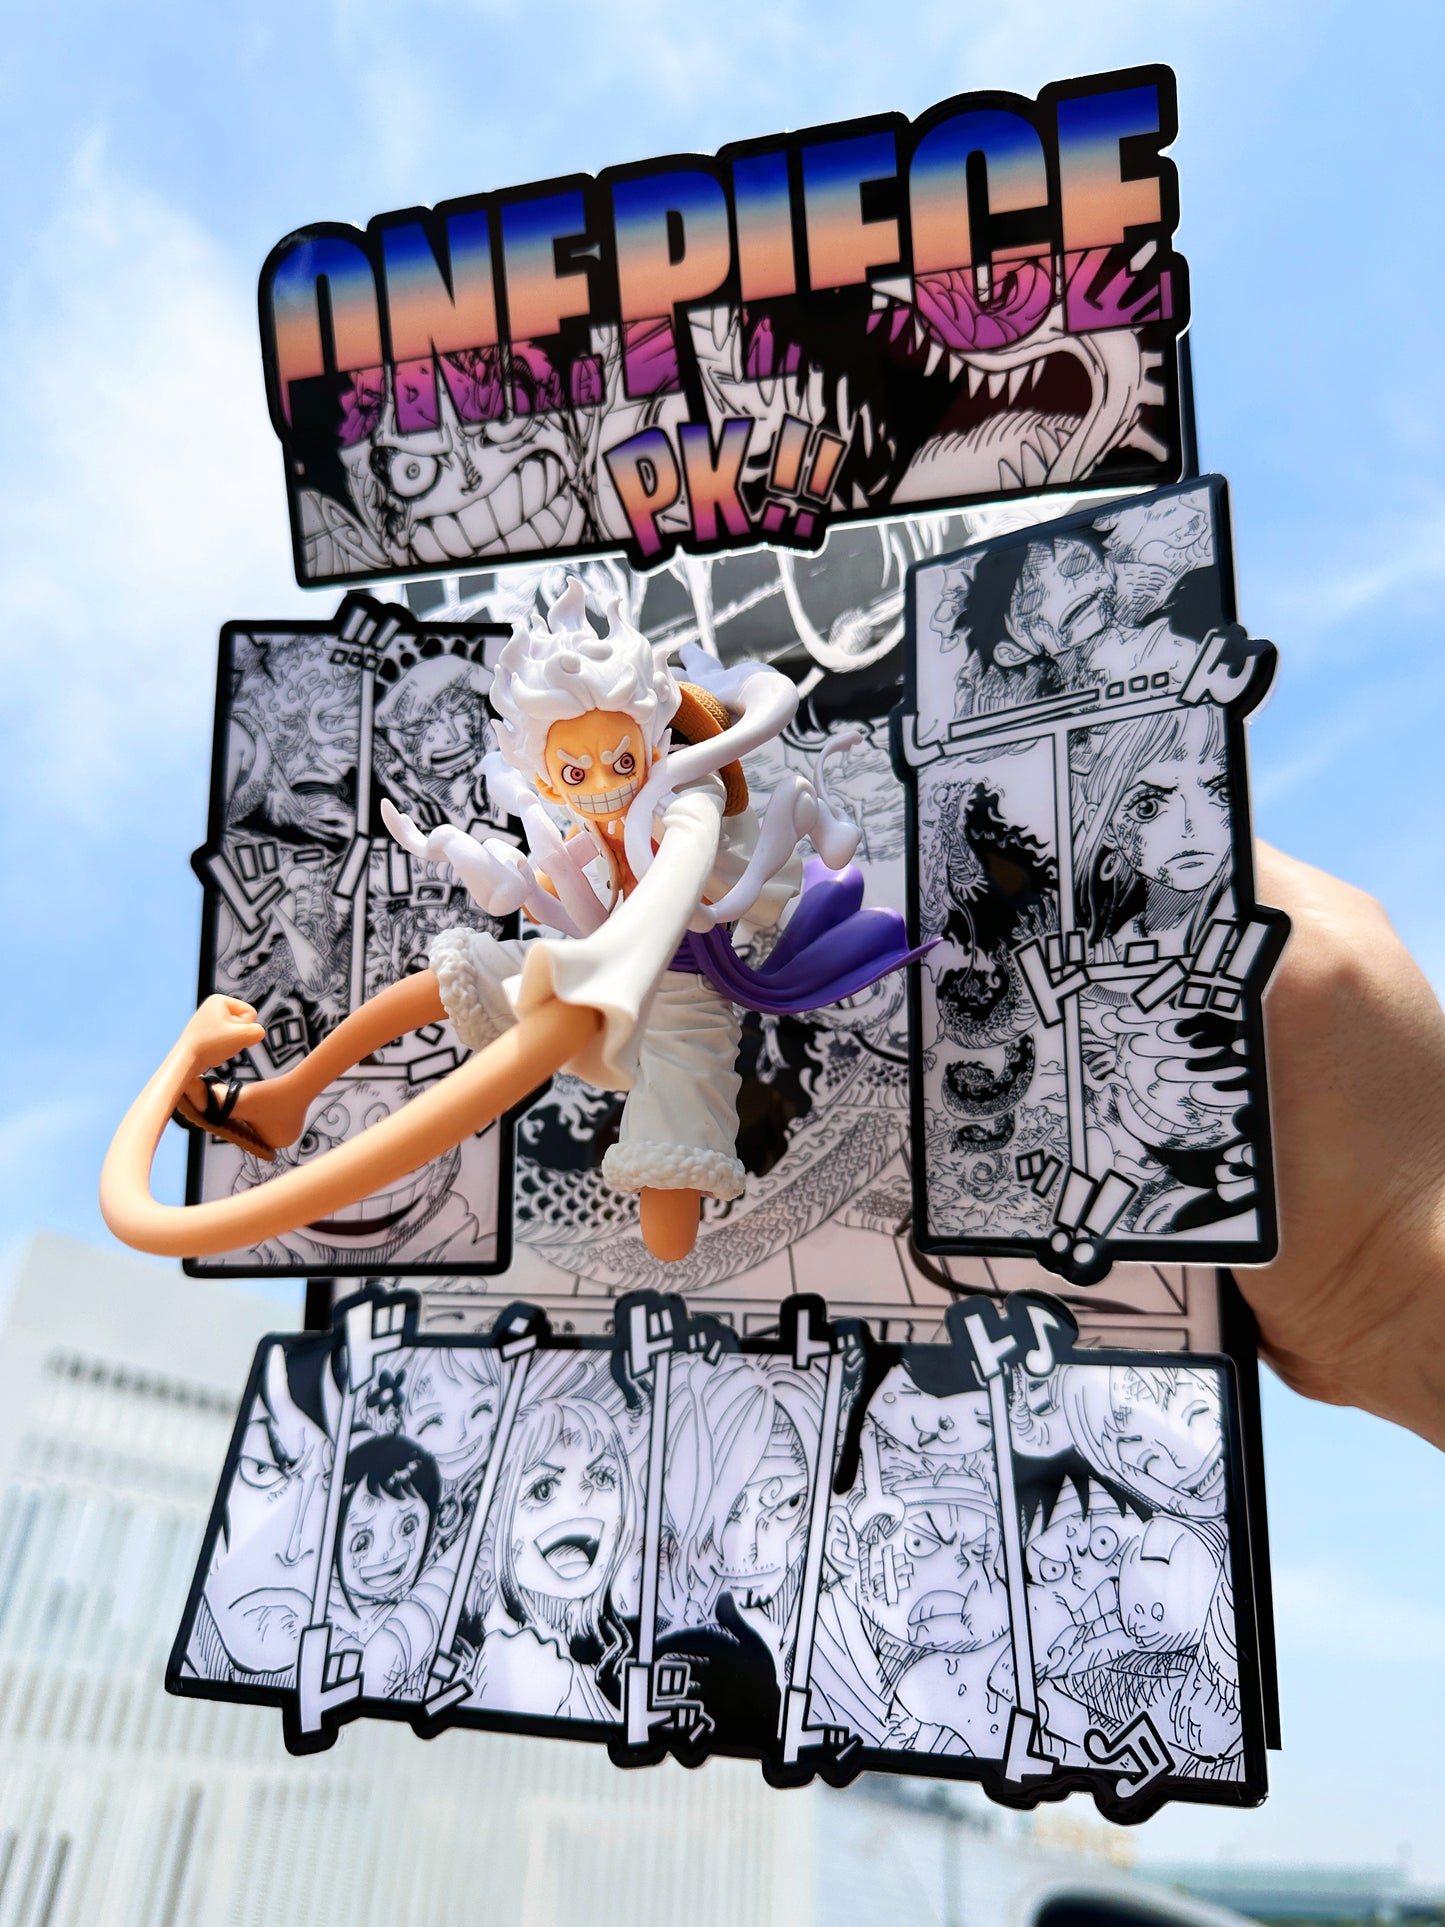 One Piece Luffy Gear 5! Nika luffy!